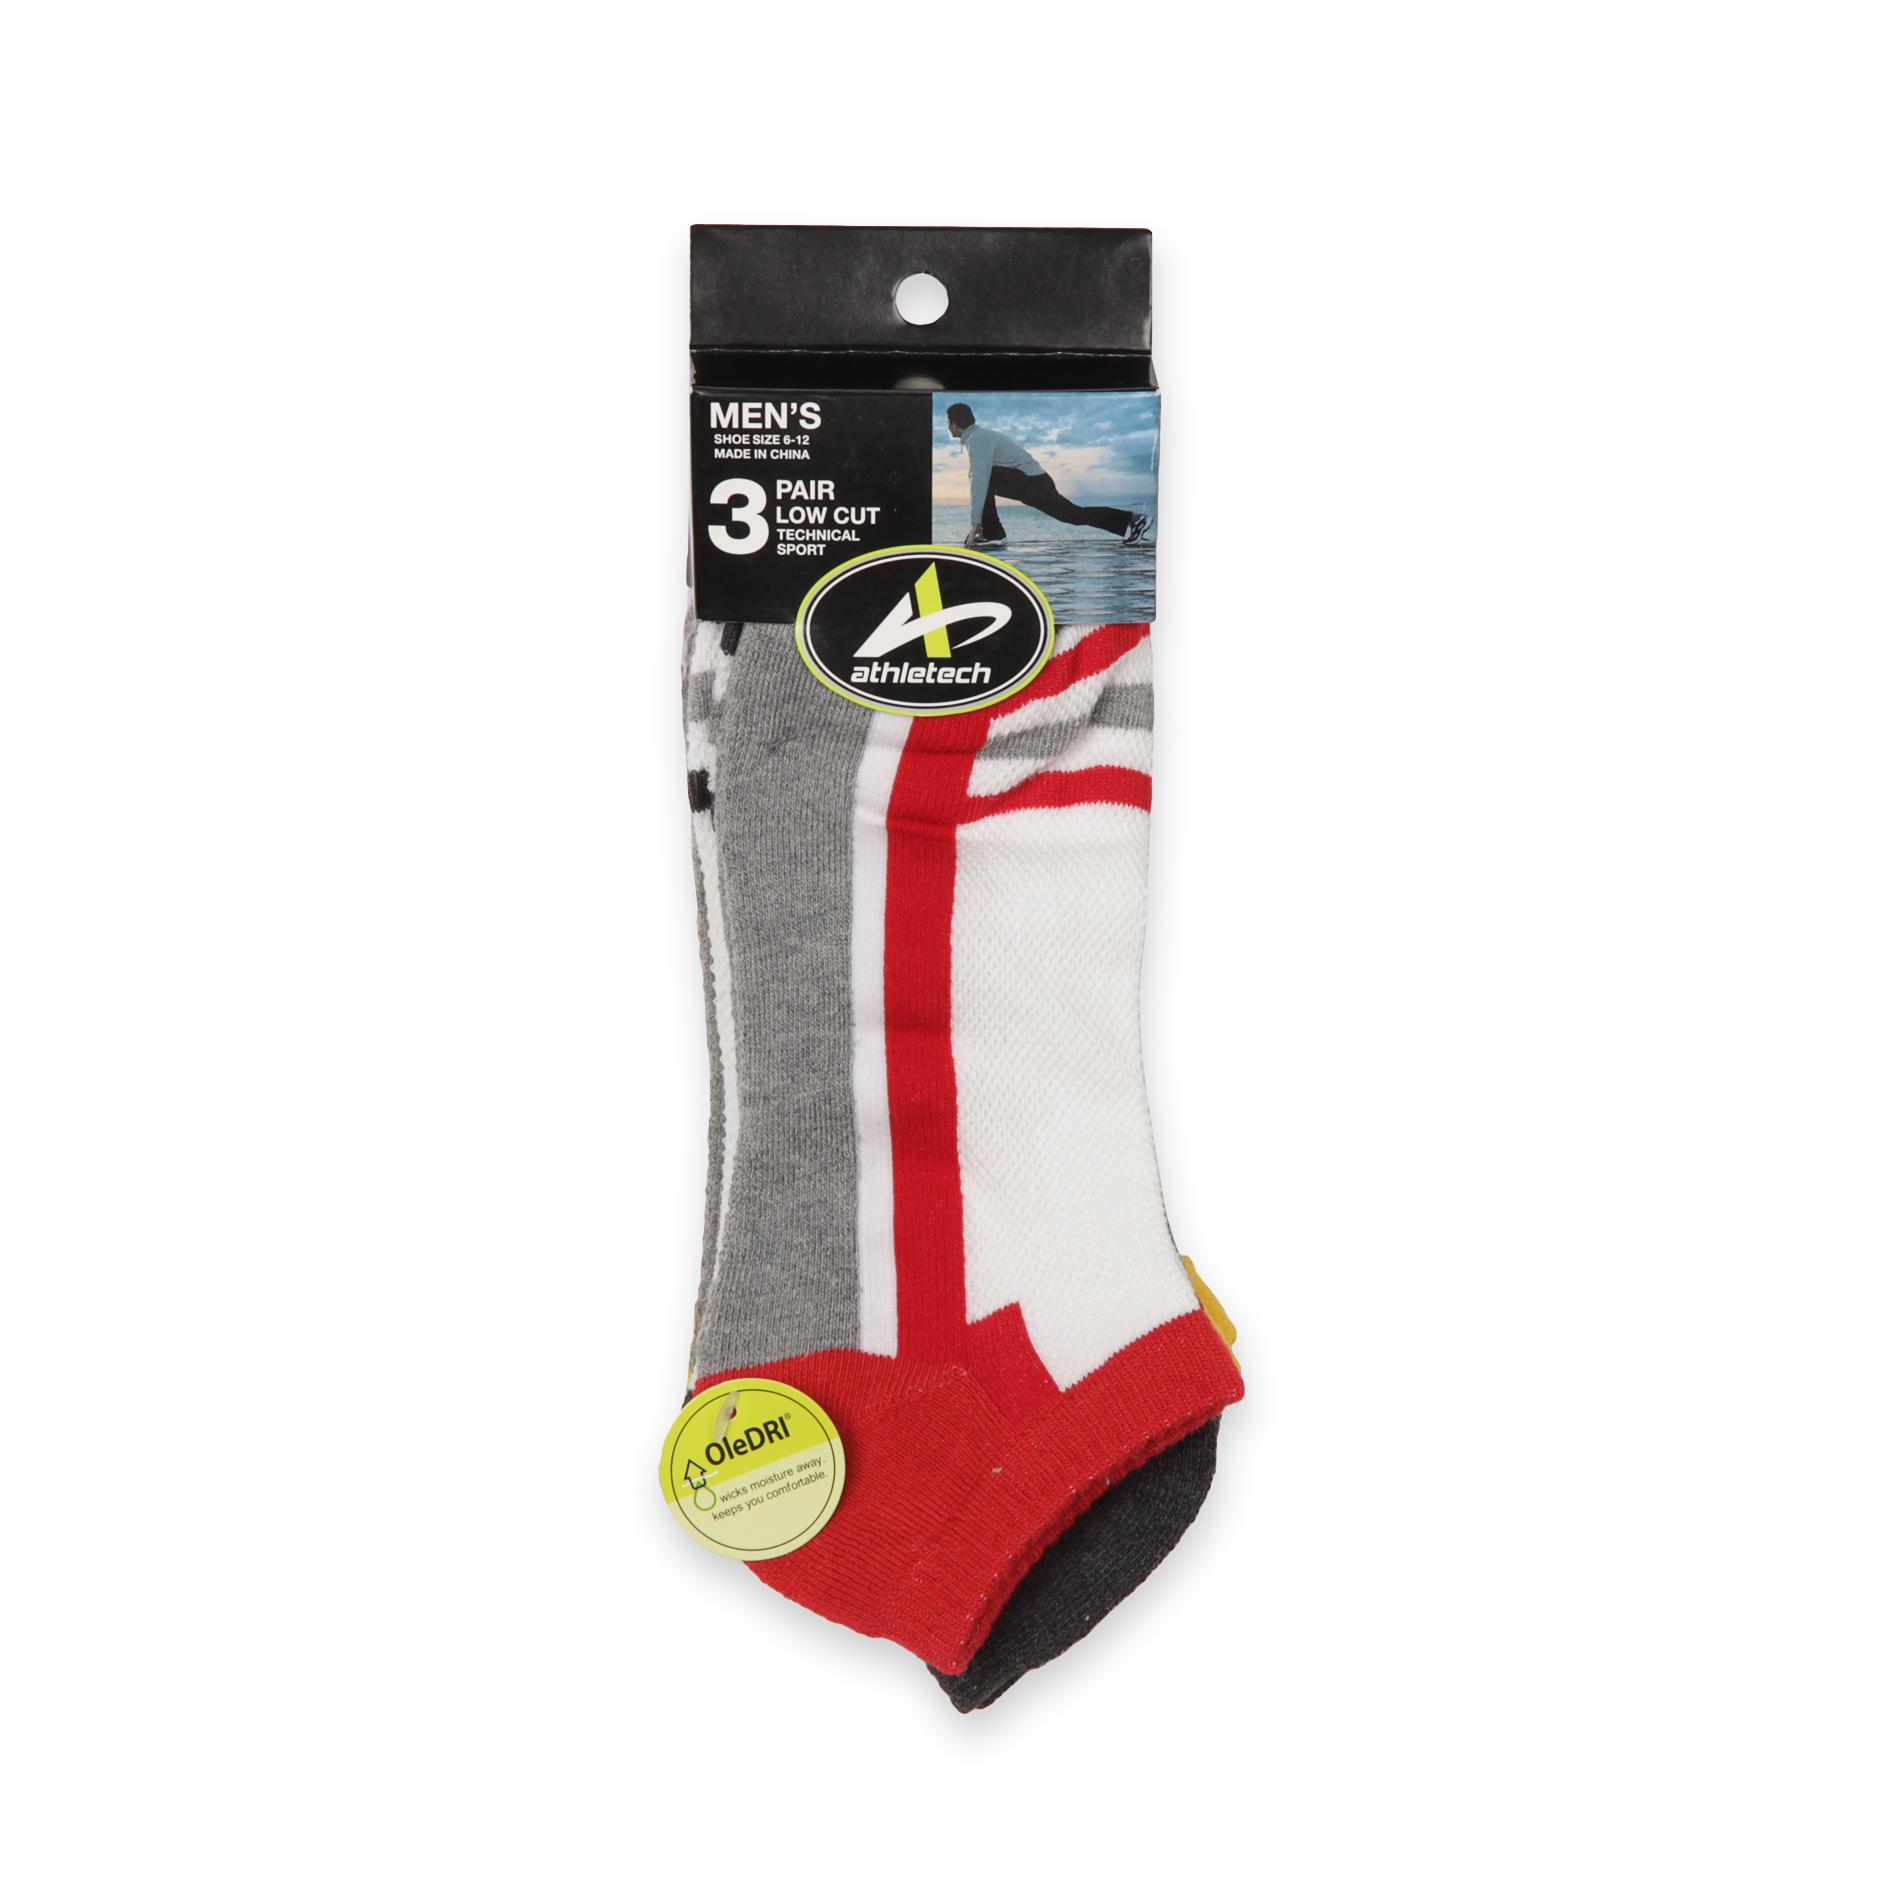 Athletech Men's 3-Pack Sport Socks